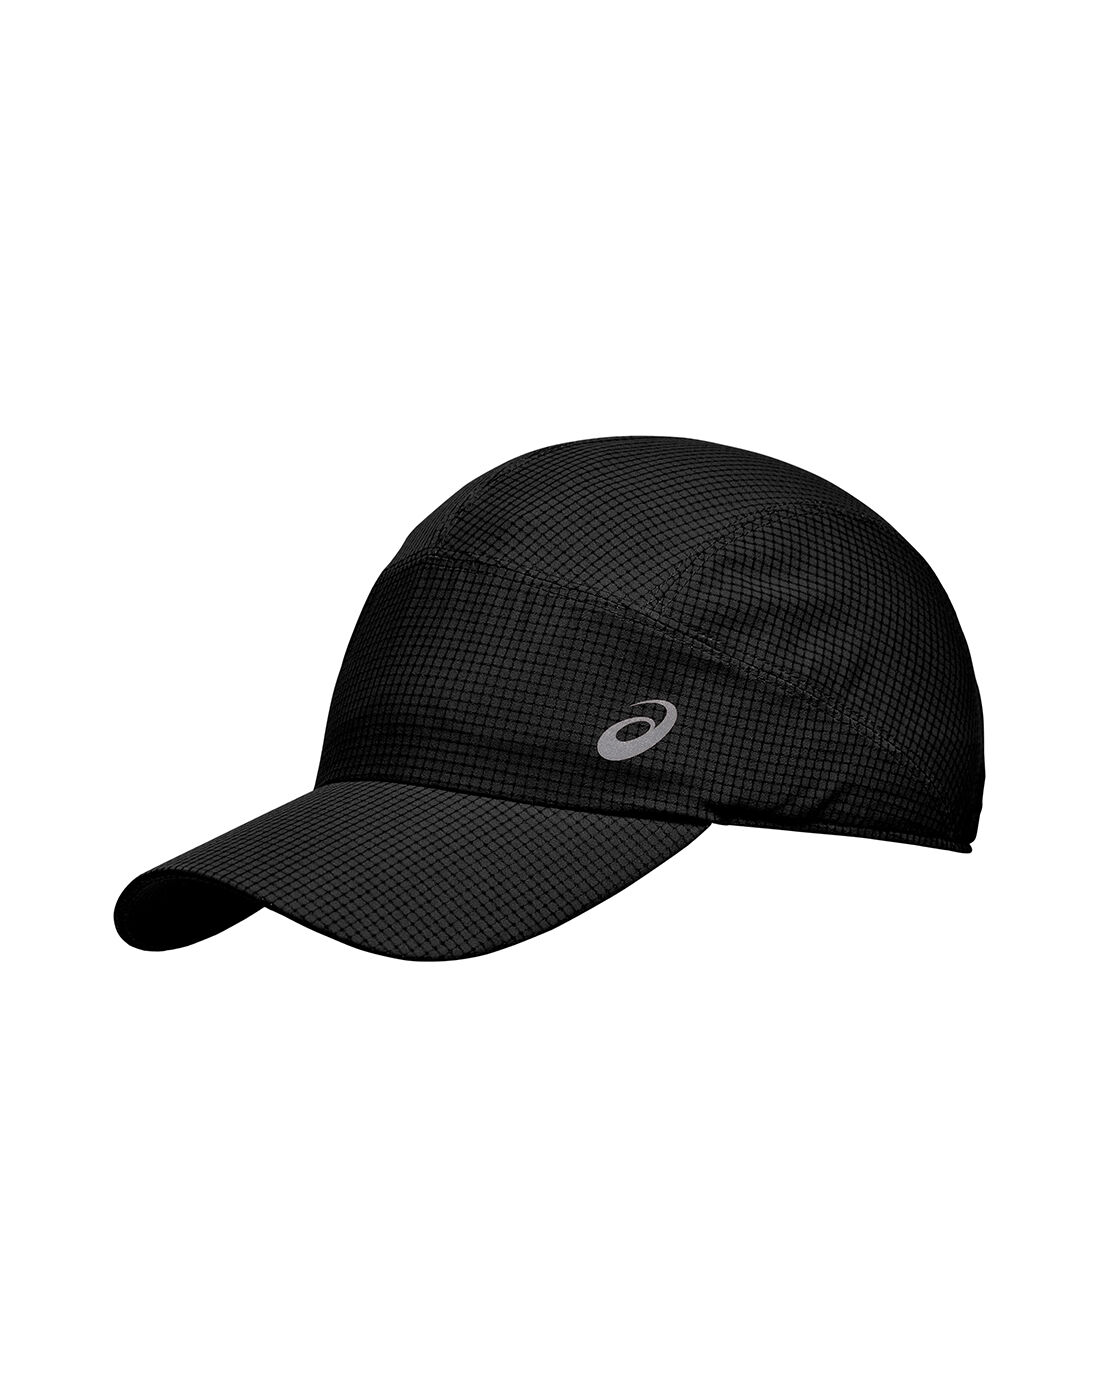 asics lightweight running cap